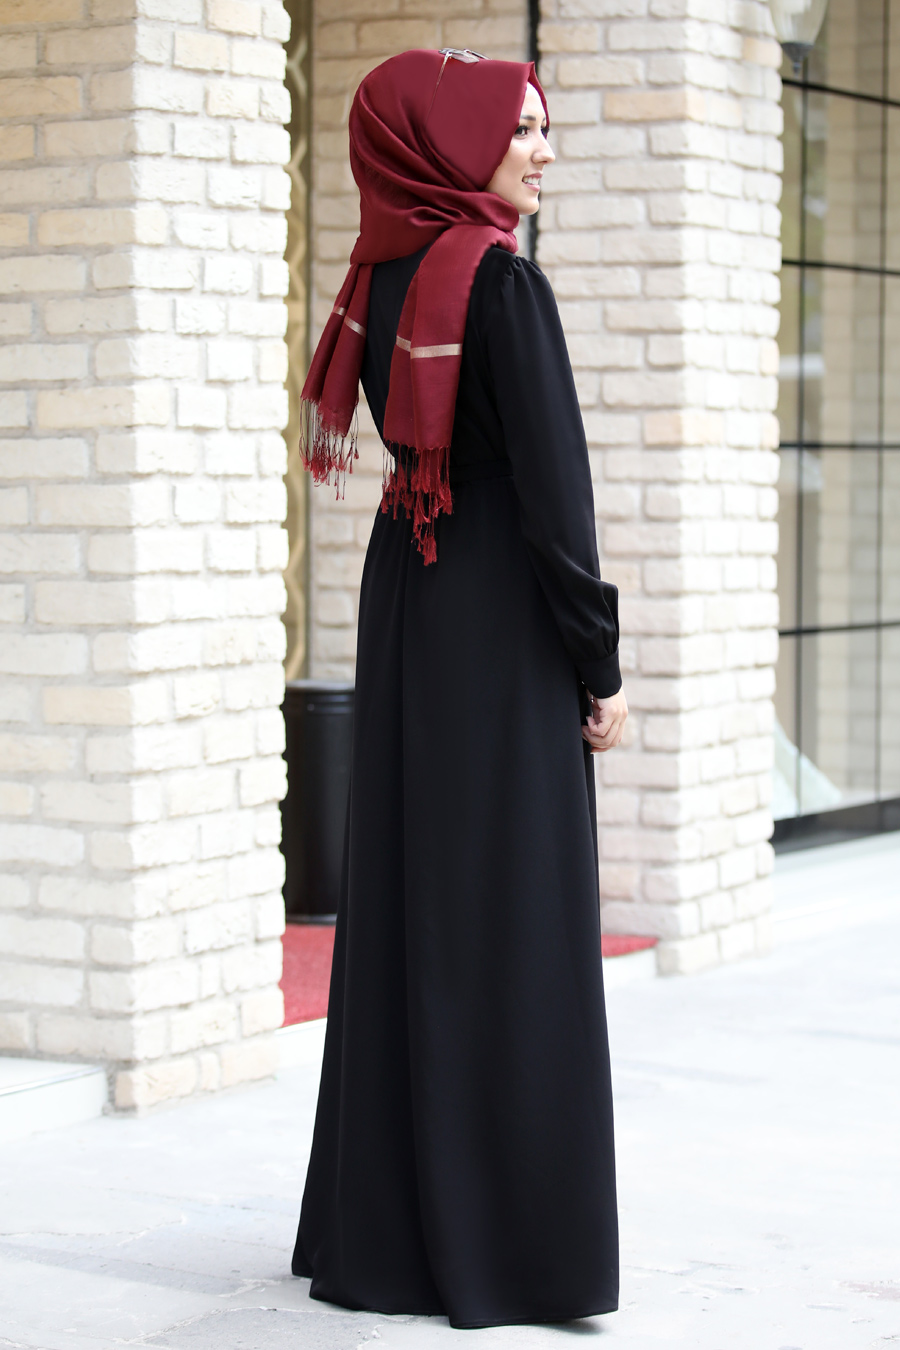 Pınar Şems - Fiyonklu Elbise - Siyah